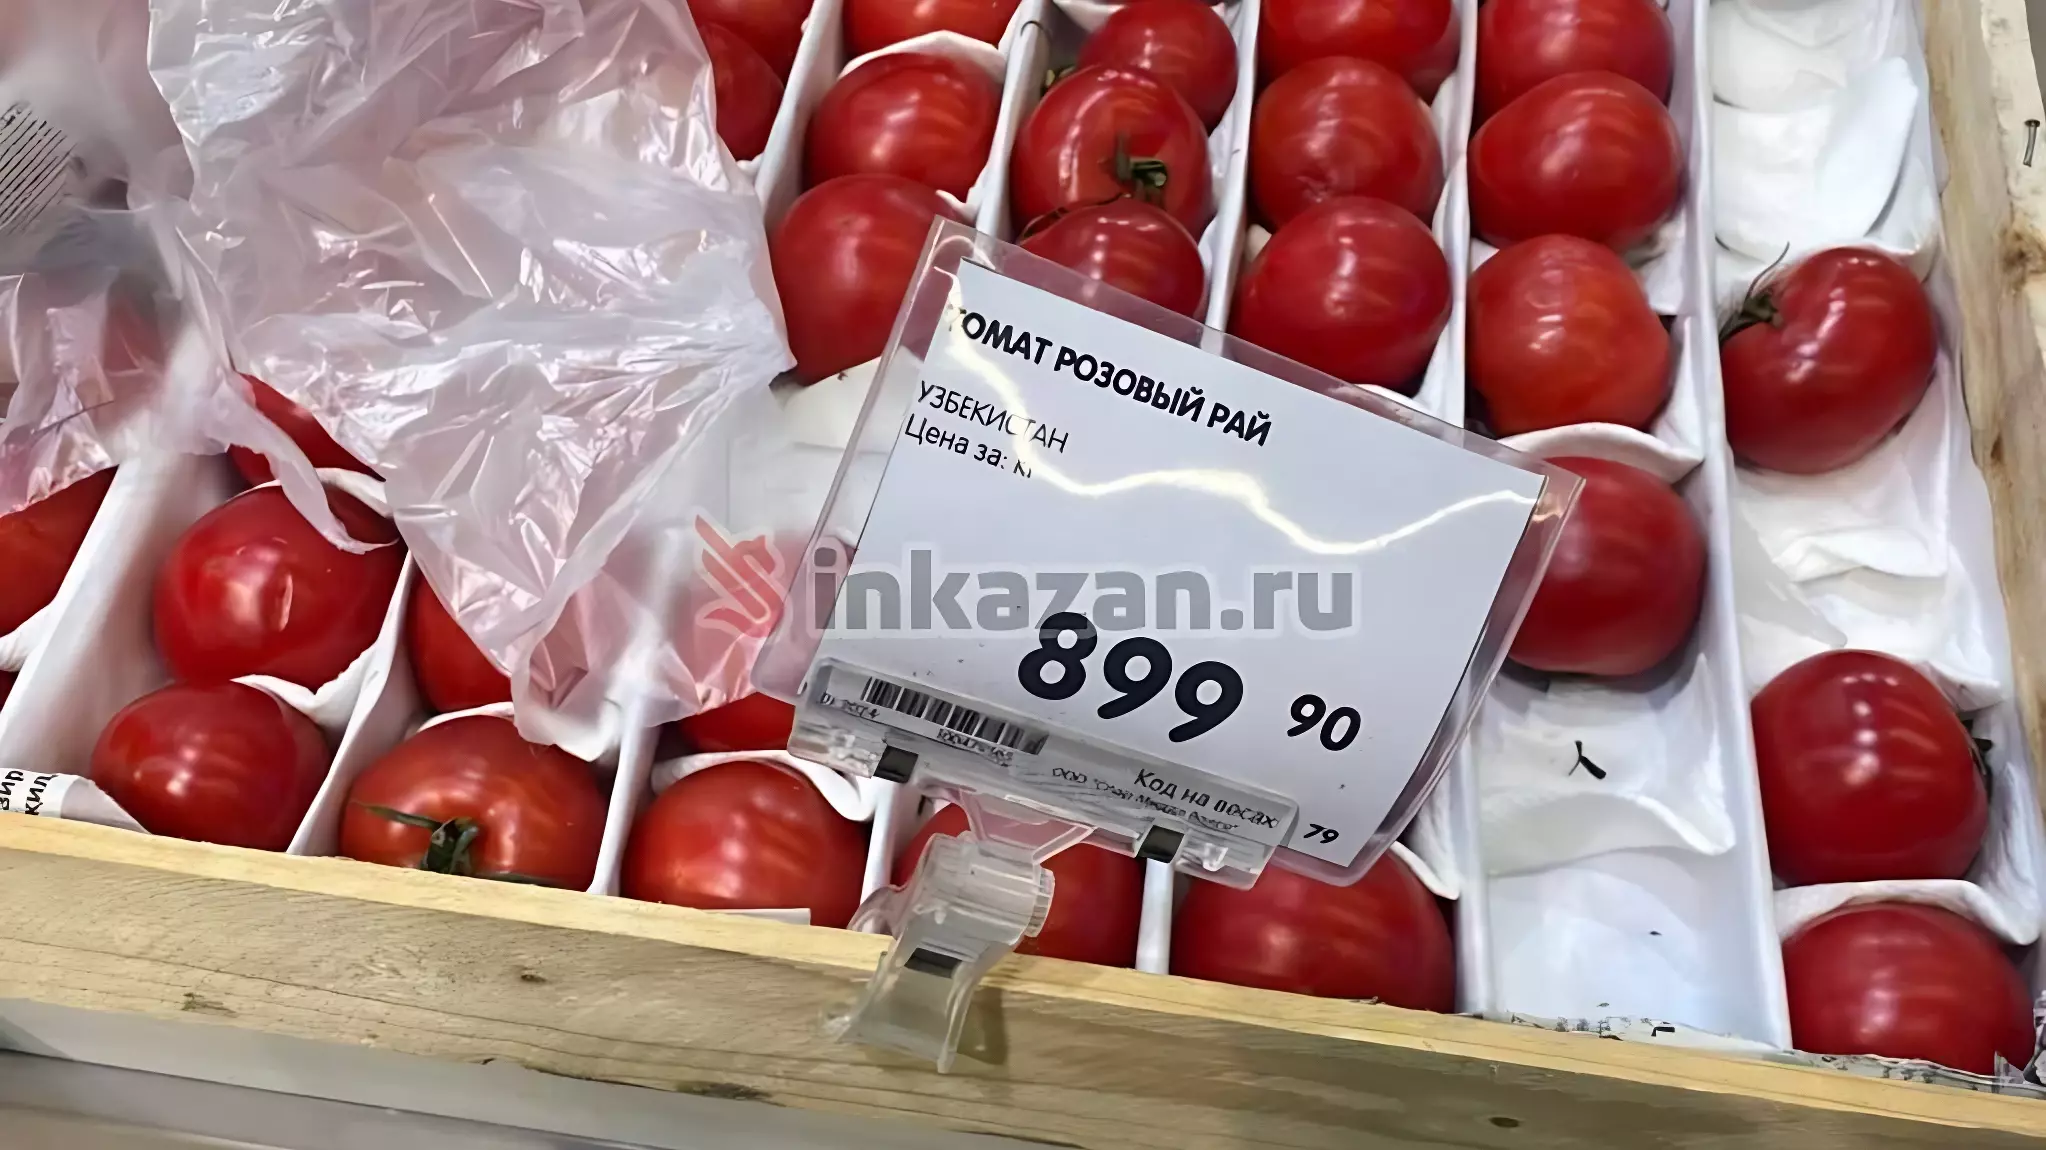 Казанцев шокировали цены на помидоры и огурцы